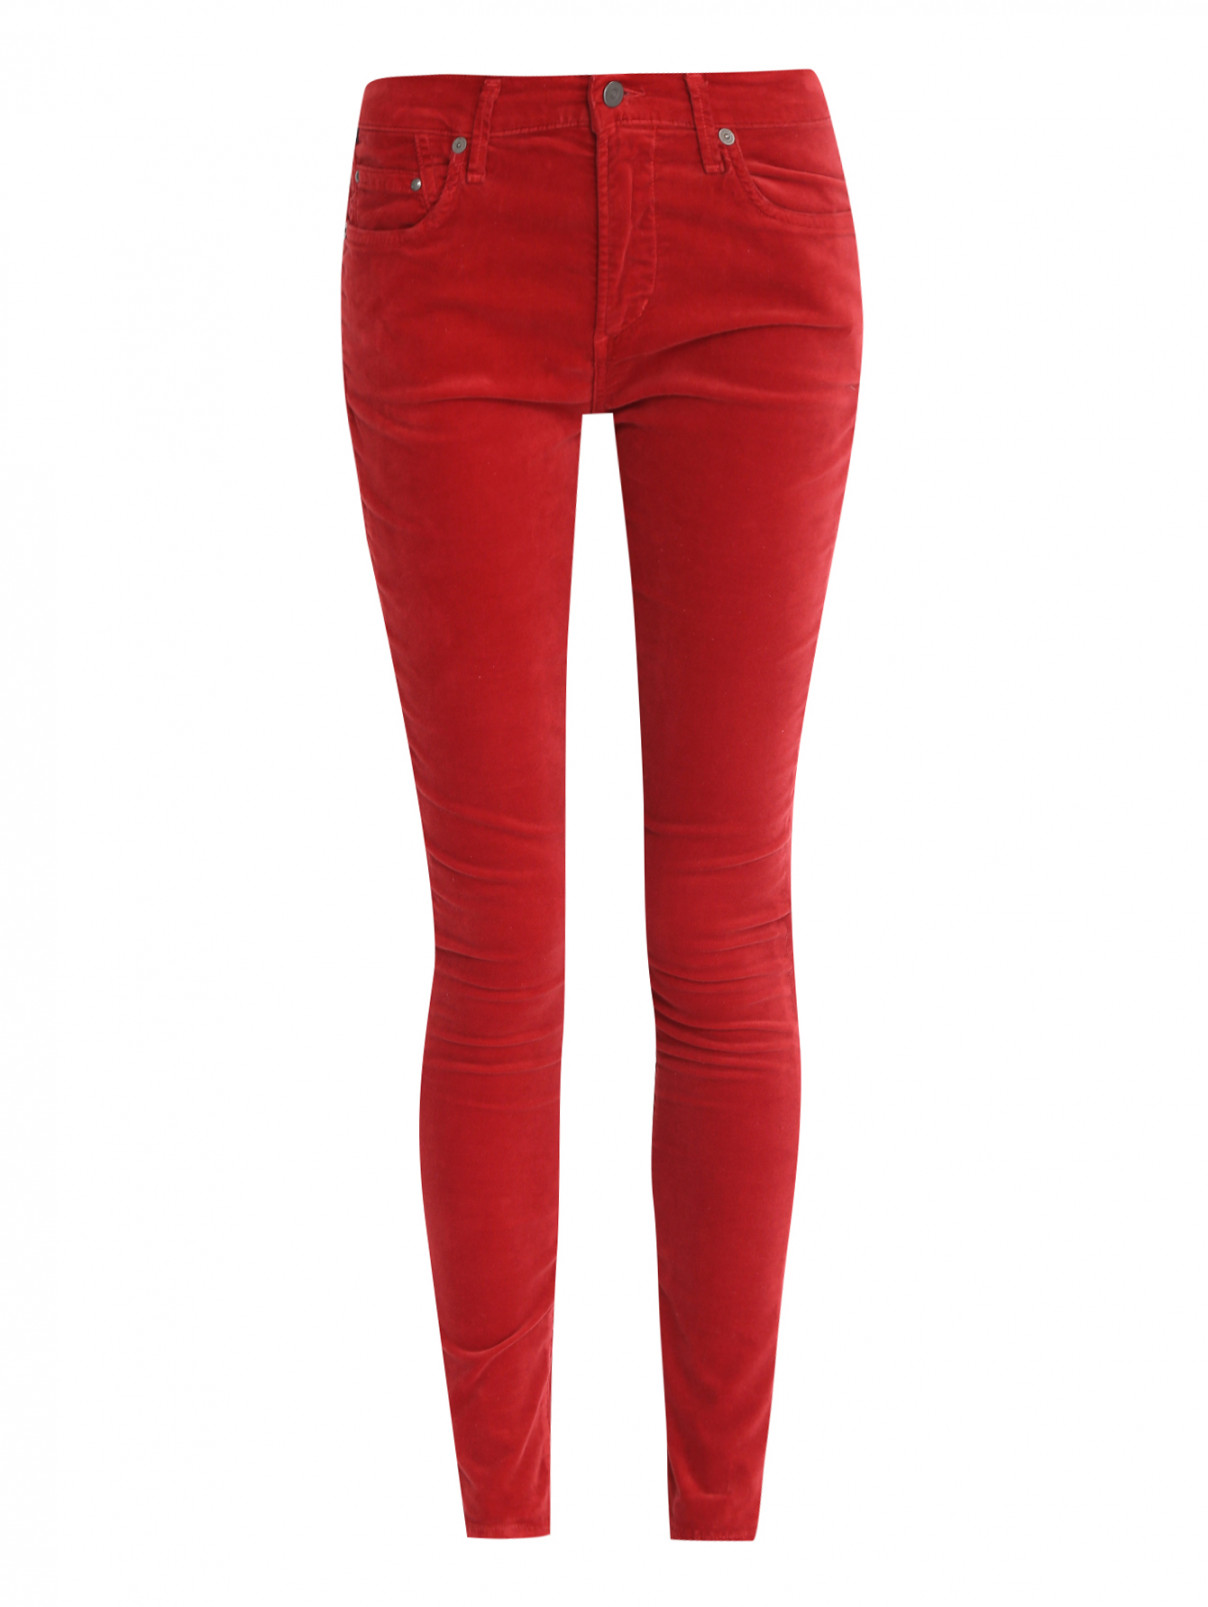 Узкие брюки Citizens of Humanity  –  Общий вид  – Цвет:  Красный